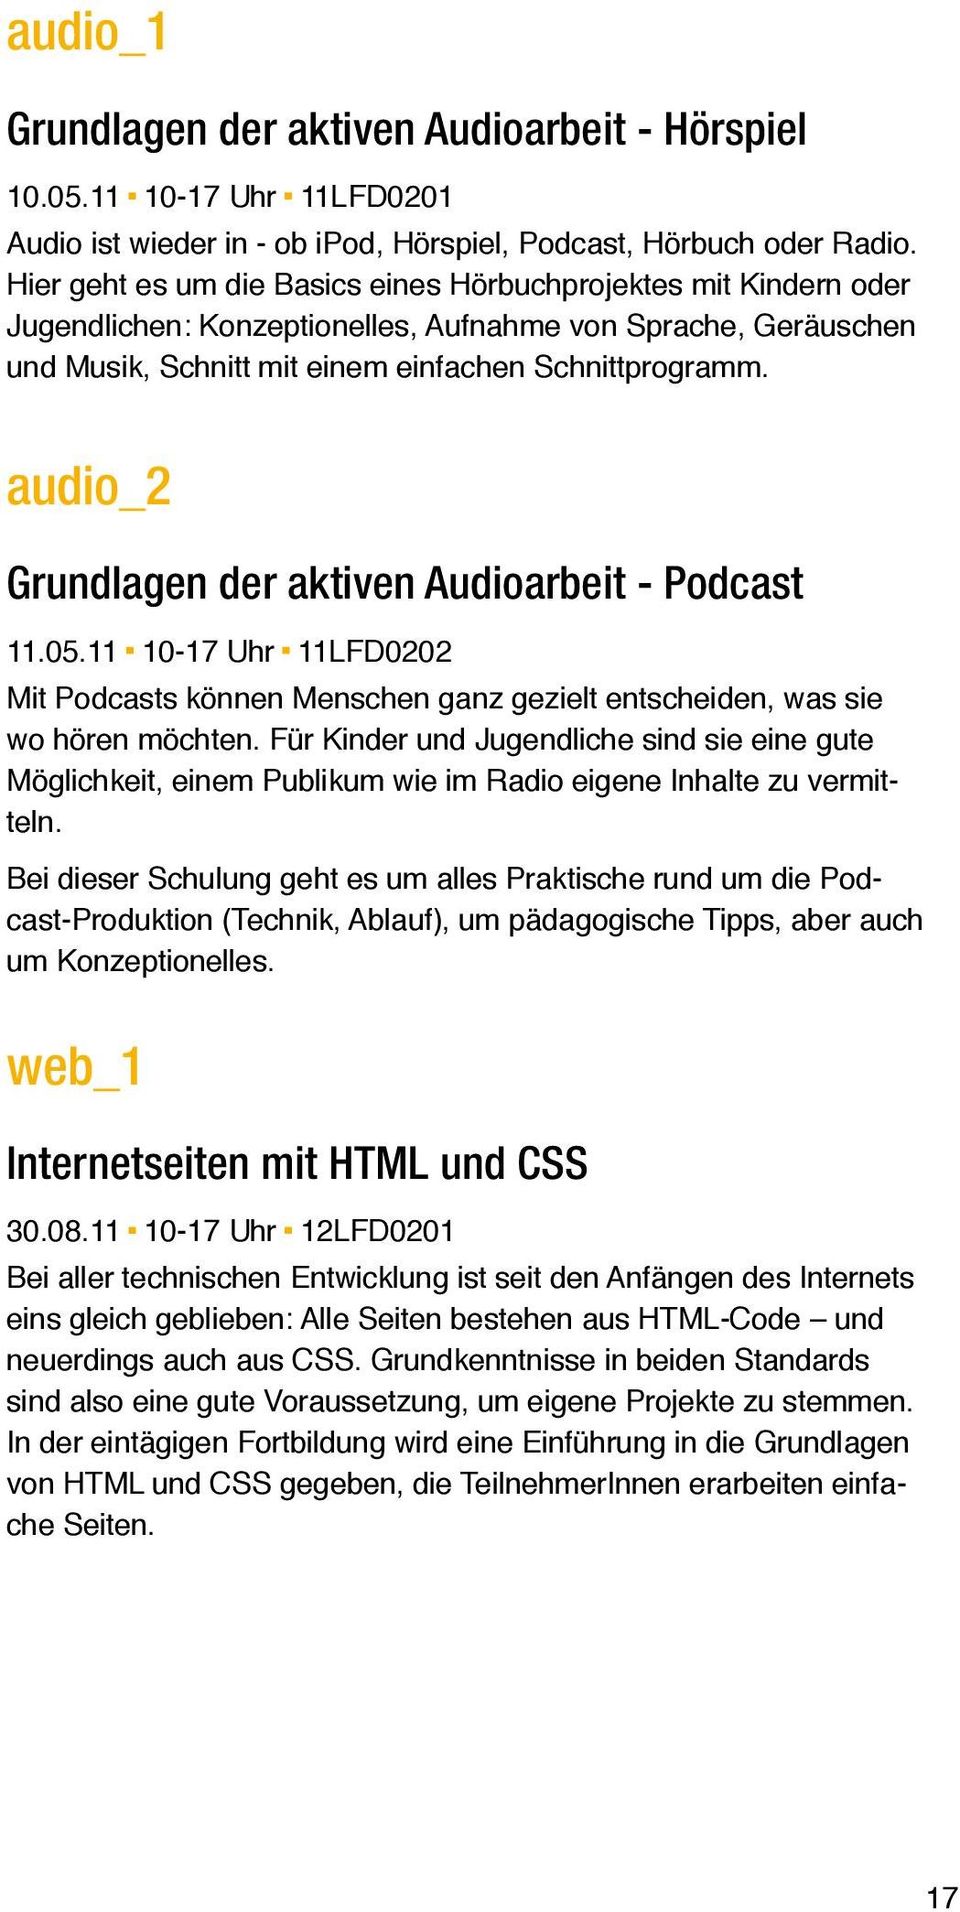 audio_2 Grundlagen der aktiven Audioarbeit - Podcast 11.05.11 10-17 Uhr 11LFD0202 Mit Podcasts können Menschen ganz gezielt entscheiden, was sie wo hören möchten.